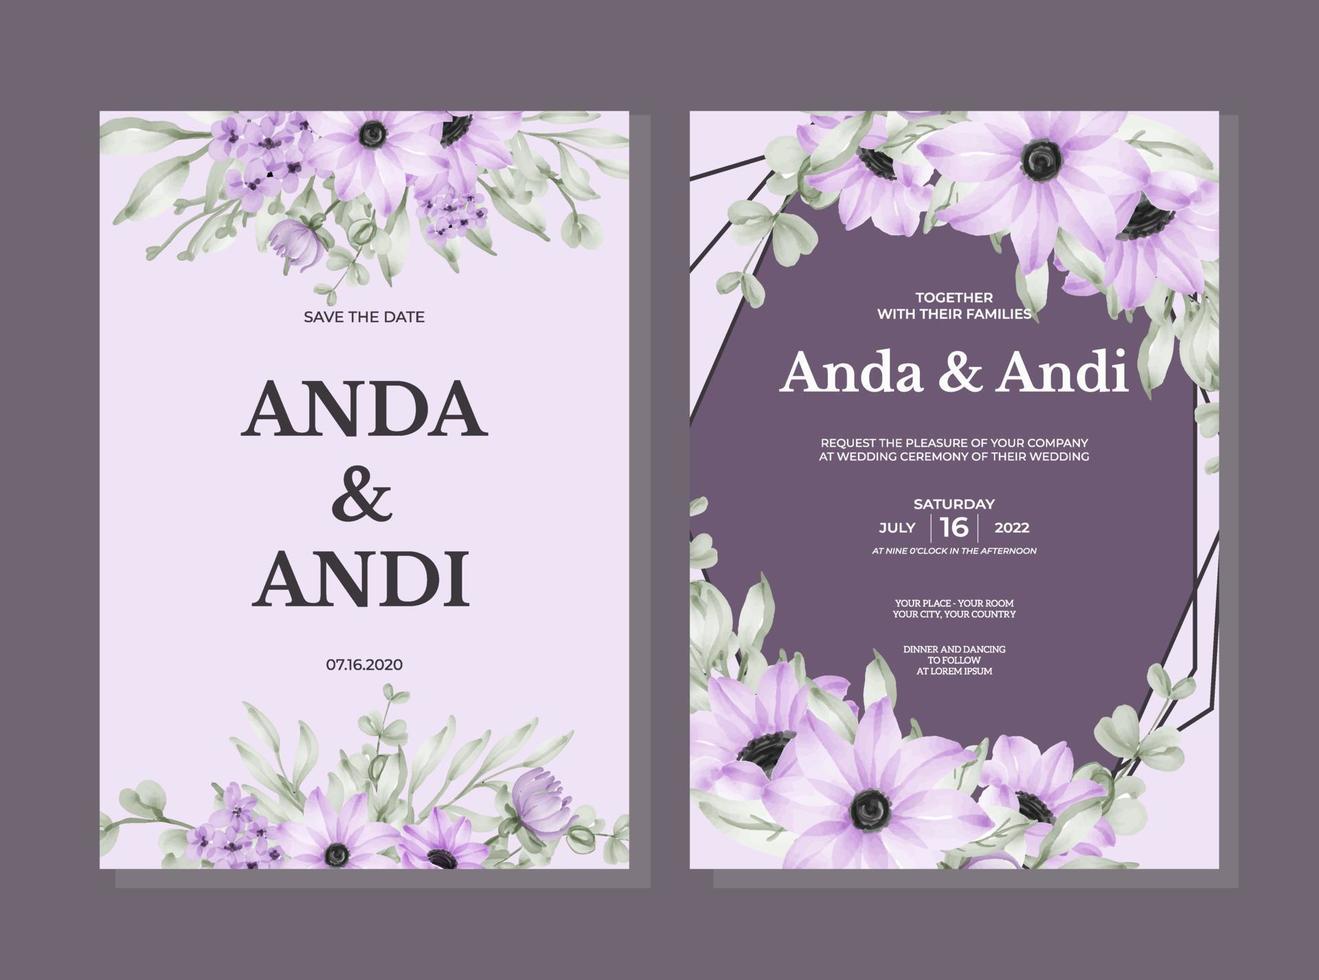 invitation de mariage sertie de belles fleurs et feuilles violettes douces vecteur